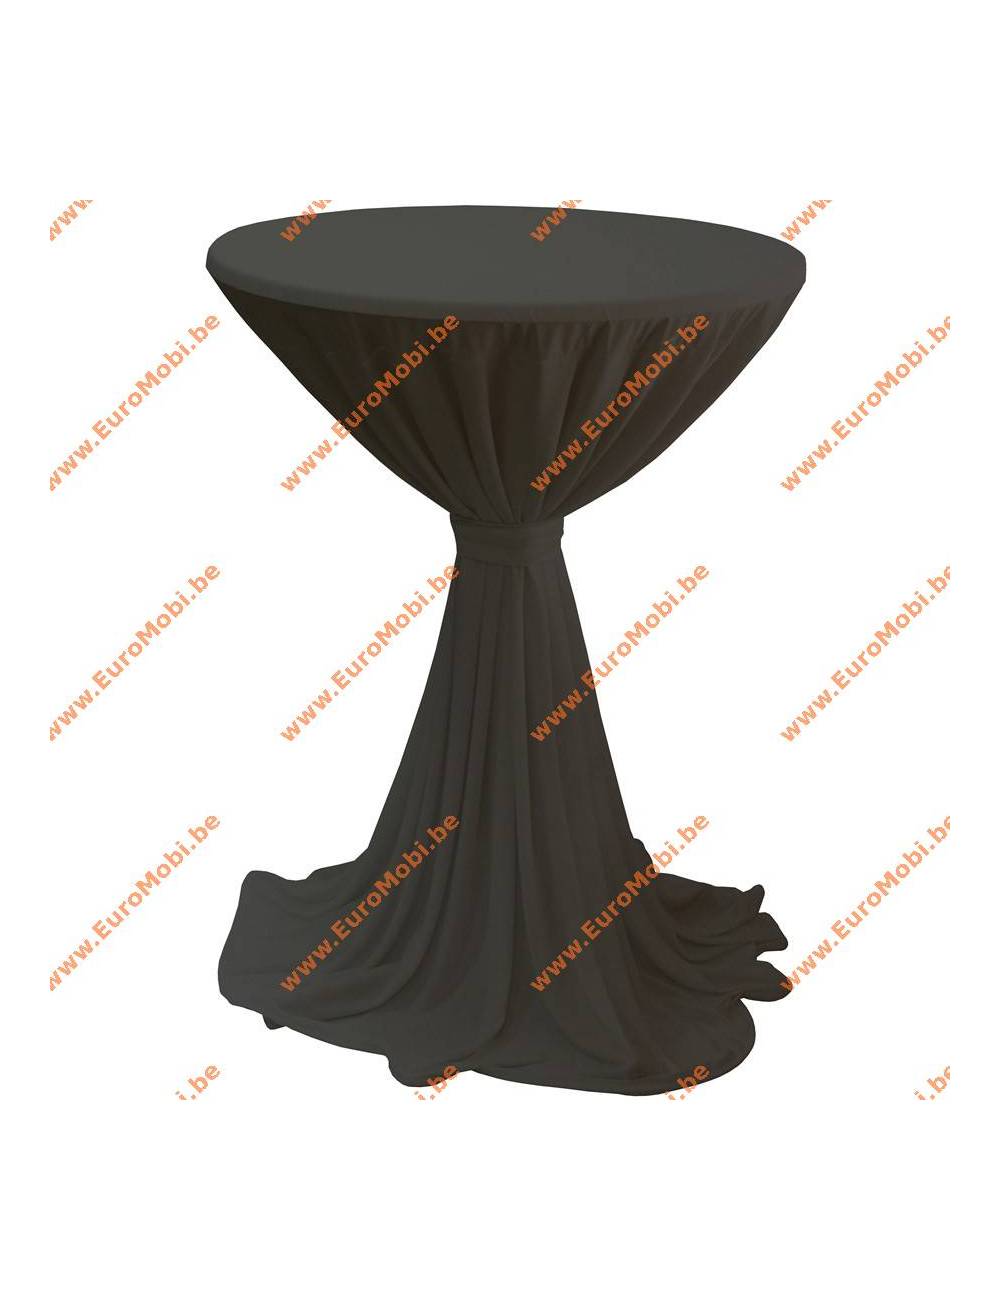 Nappe Porto extensible pour table debout noire